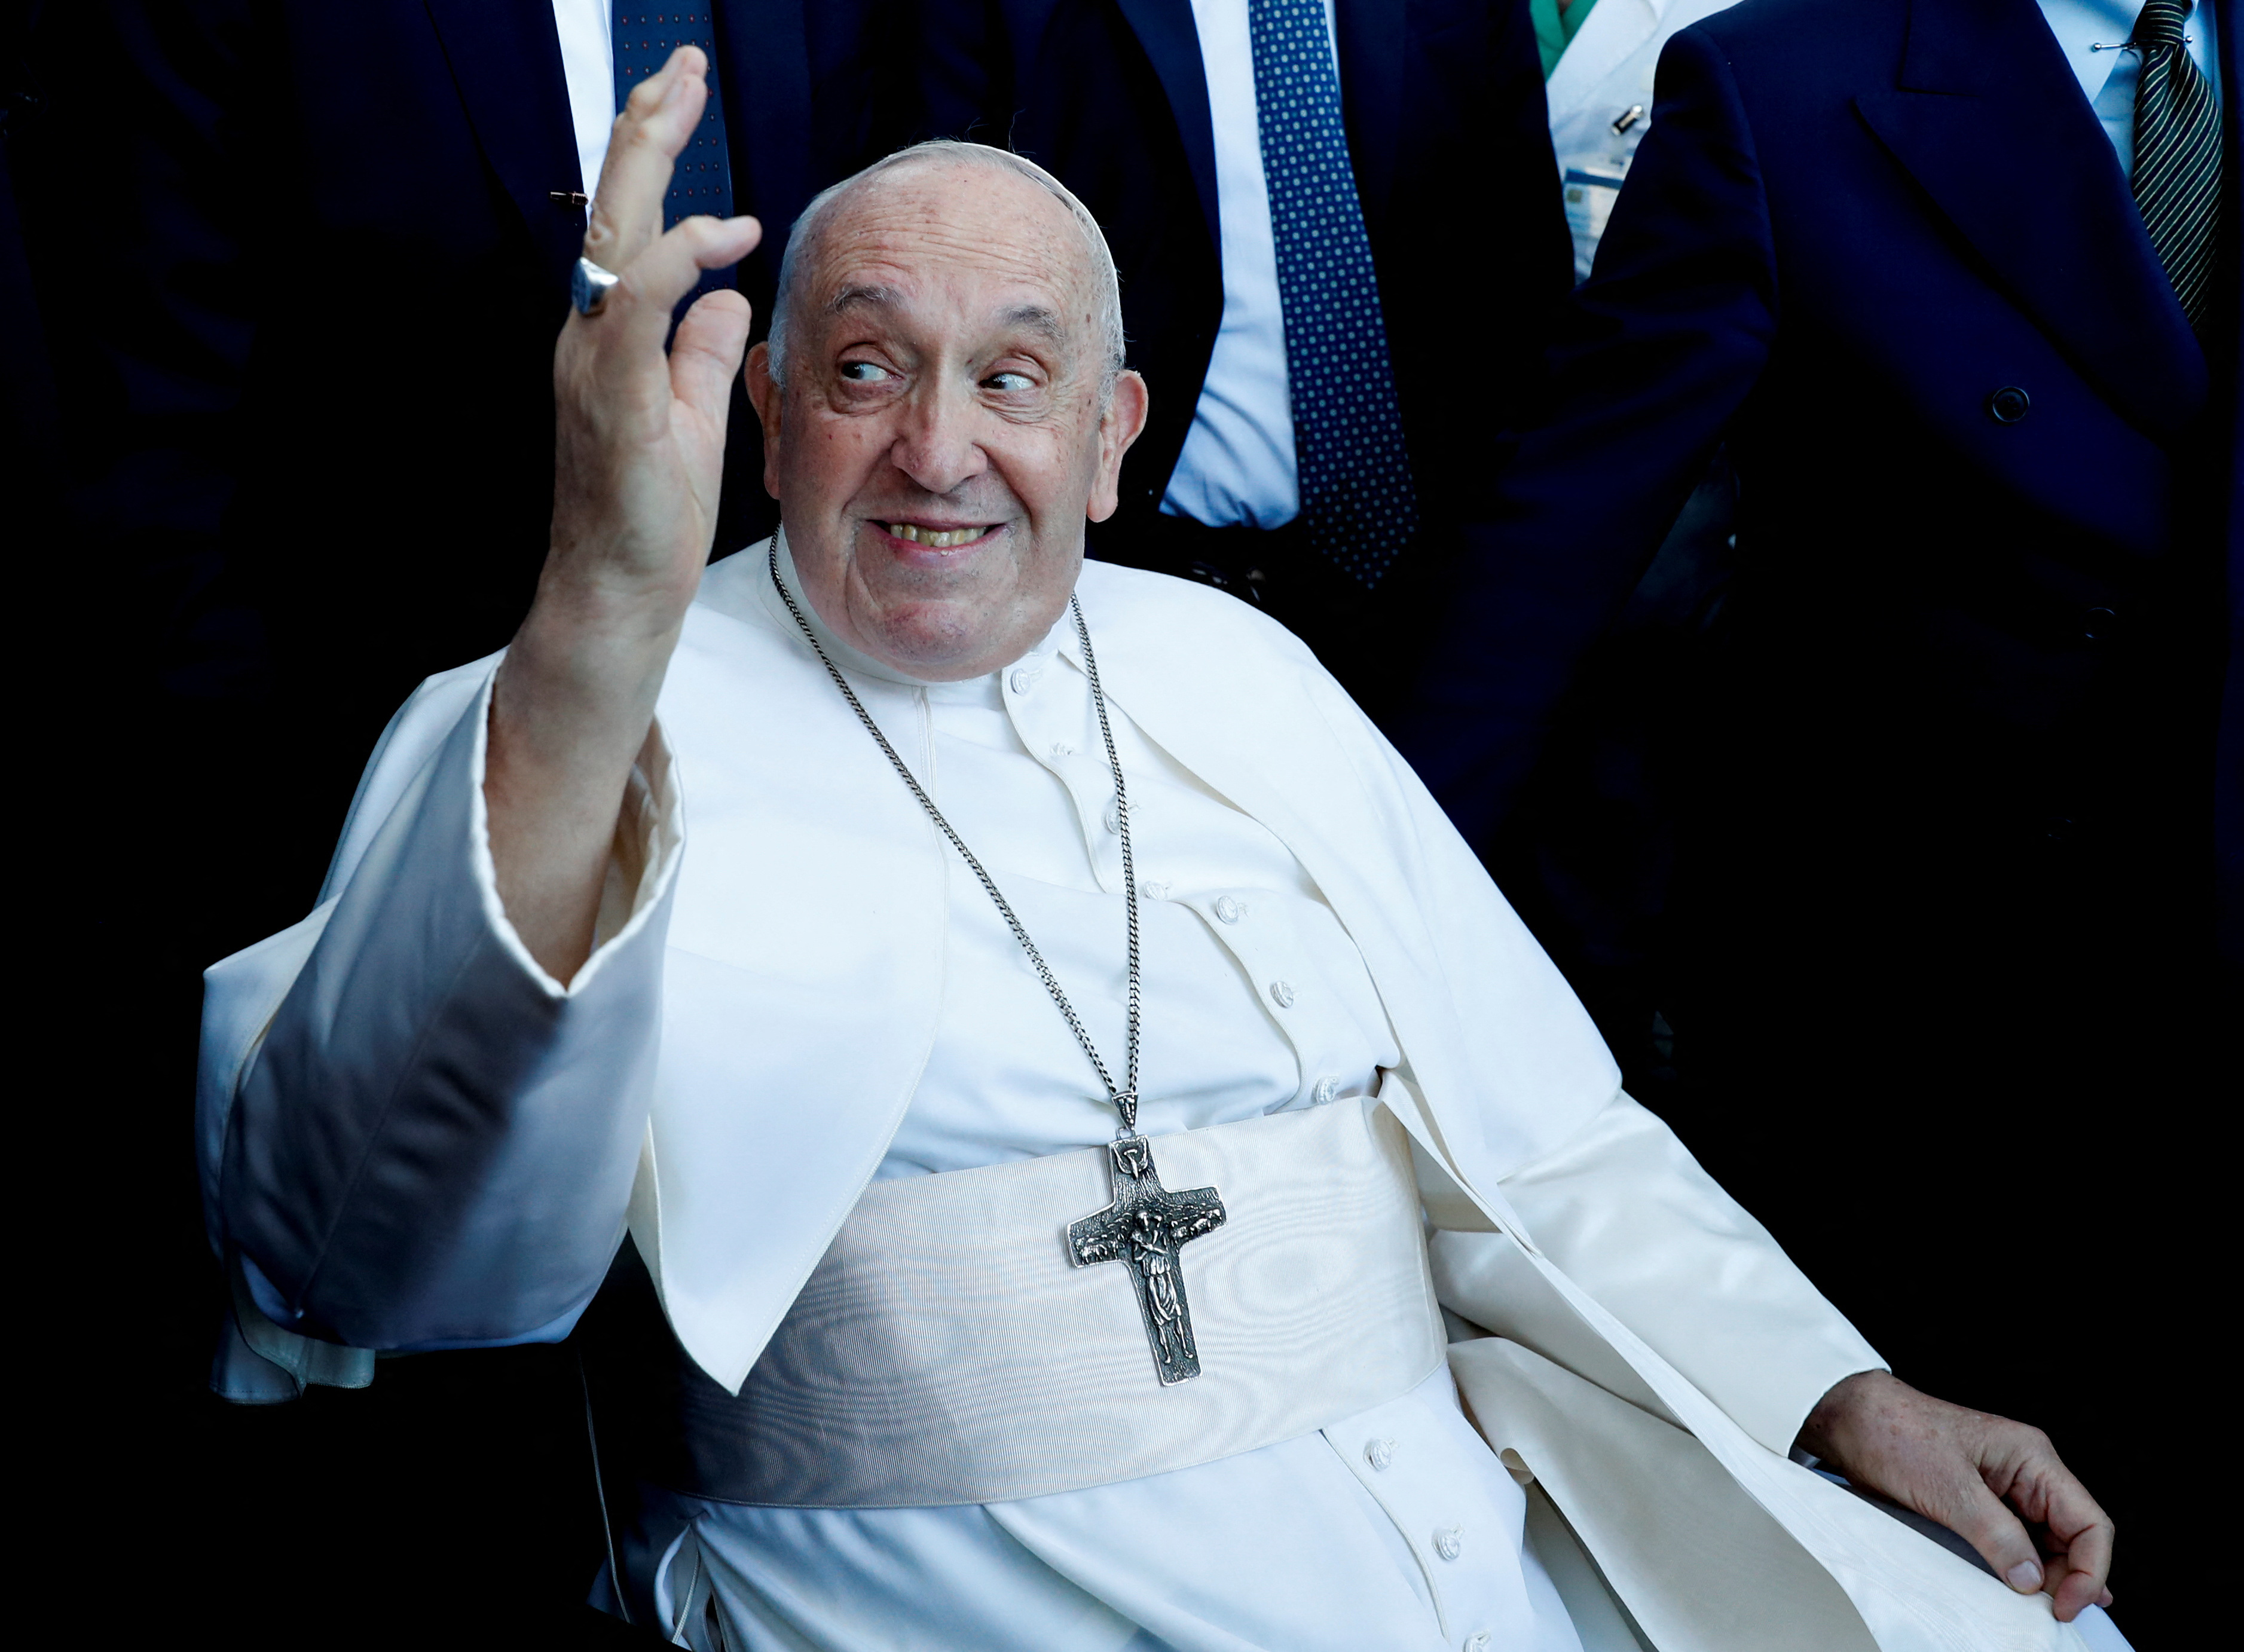 “Todavía vivo”: el papa Francisco fue dado de alta del hospital Gemelli en Roma tras su operación por una hernia abdominal